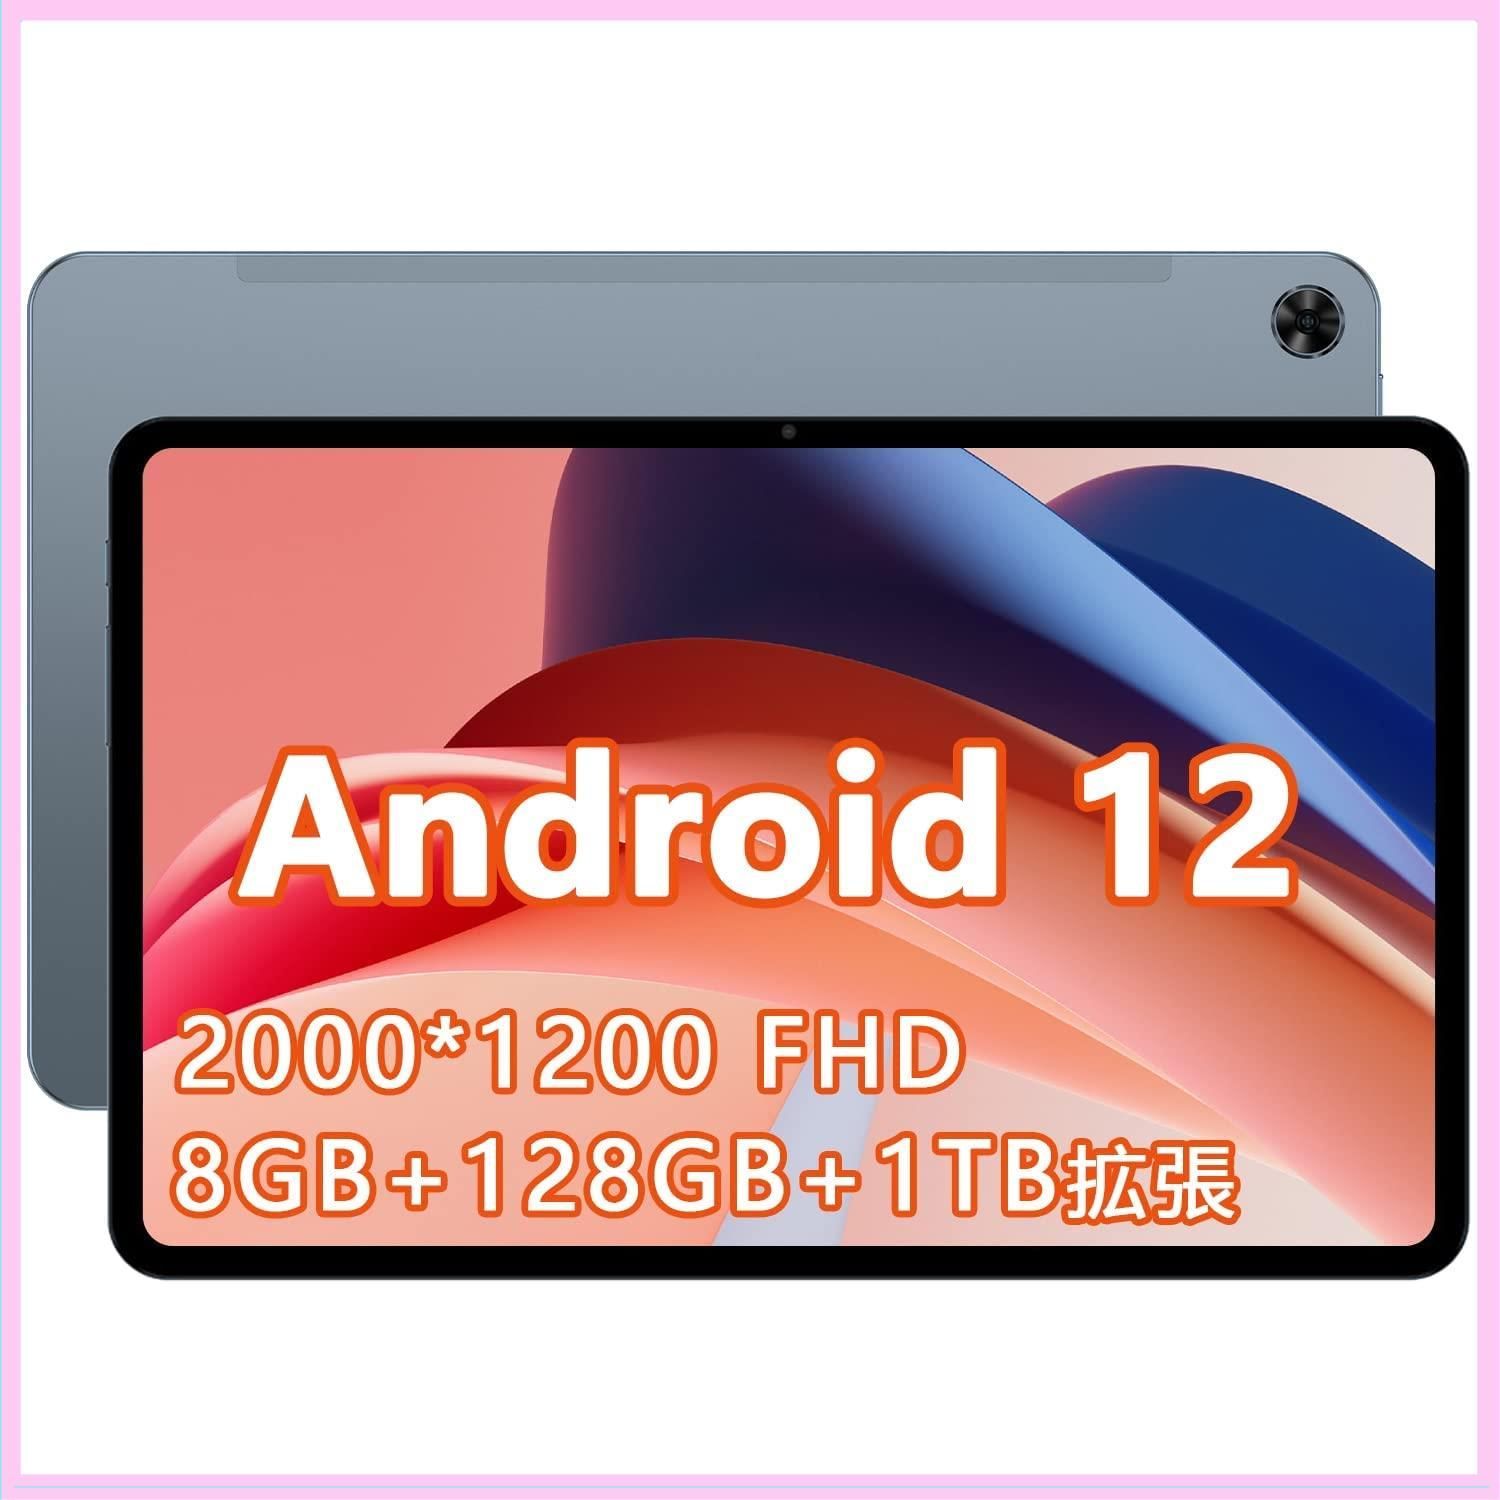 Android 12 タブレット TECLAST T40 Pro RAM 8GB+ROM 128GB,10.4インチ 2000*1200解像度  フルHD IPS ディスプレイ,UNISOC 8コアCPU 2.0GHz,2.4G 5G Wi-Fiモデル,4G